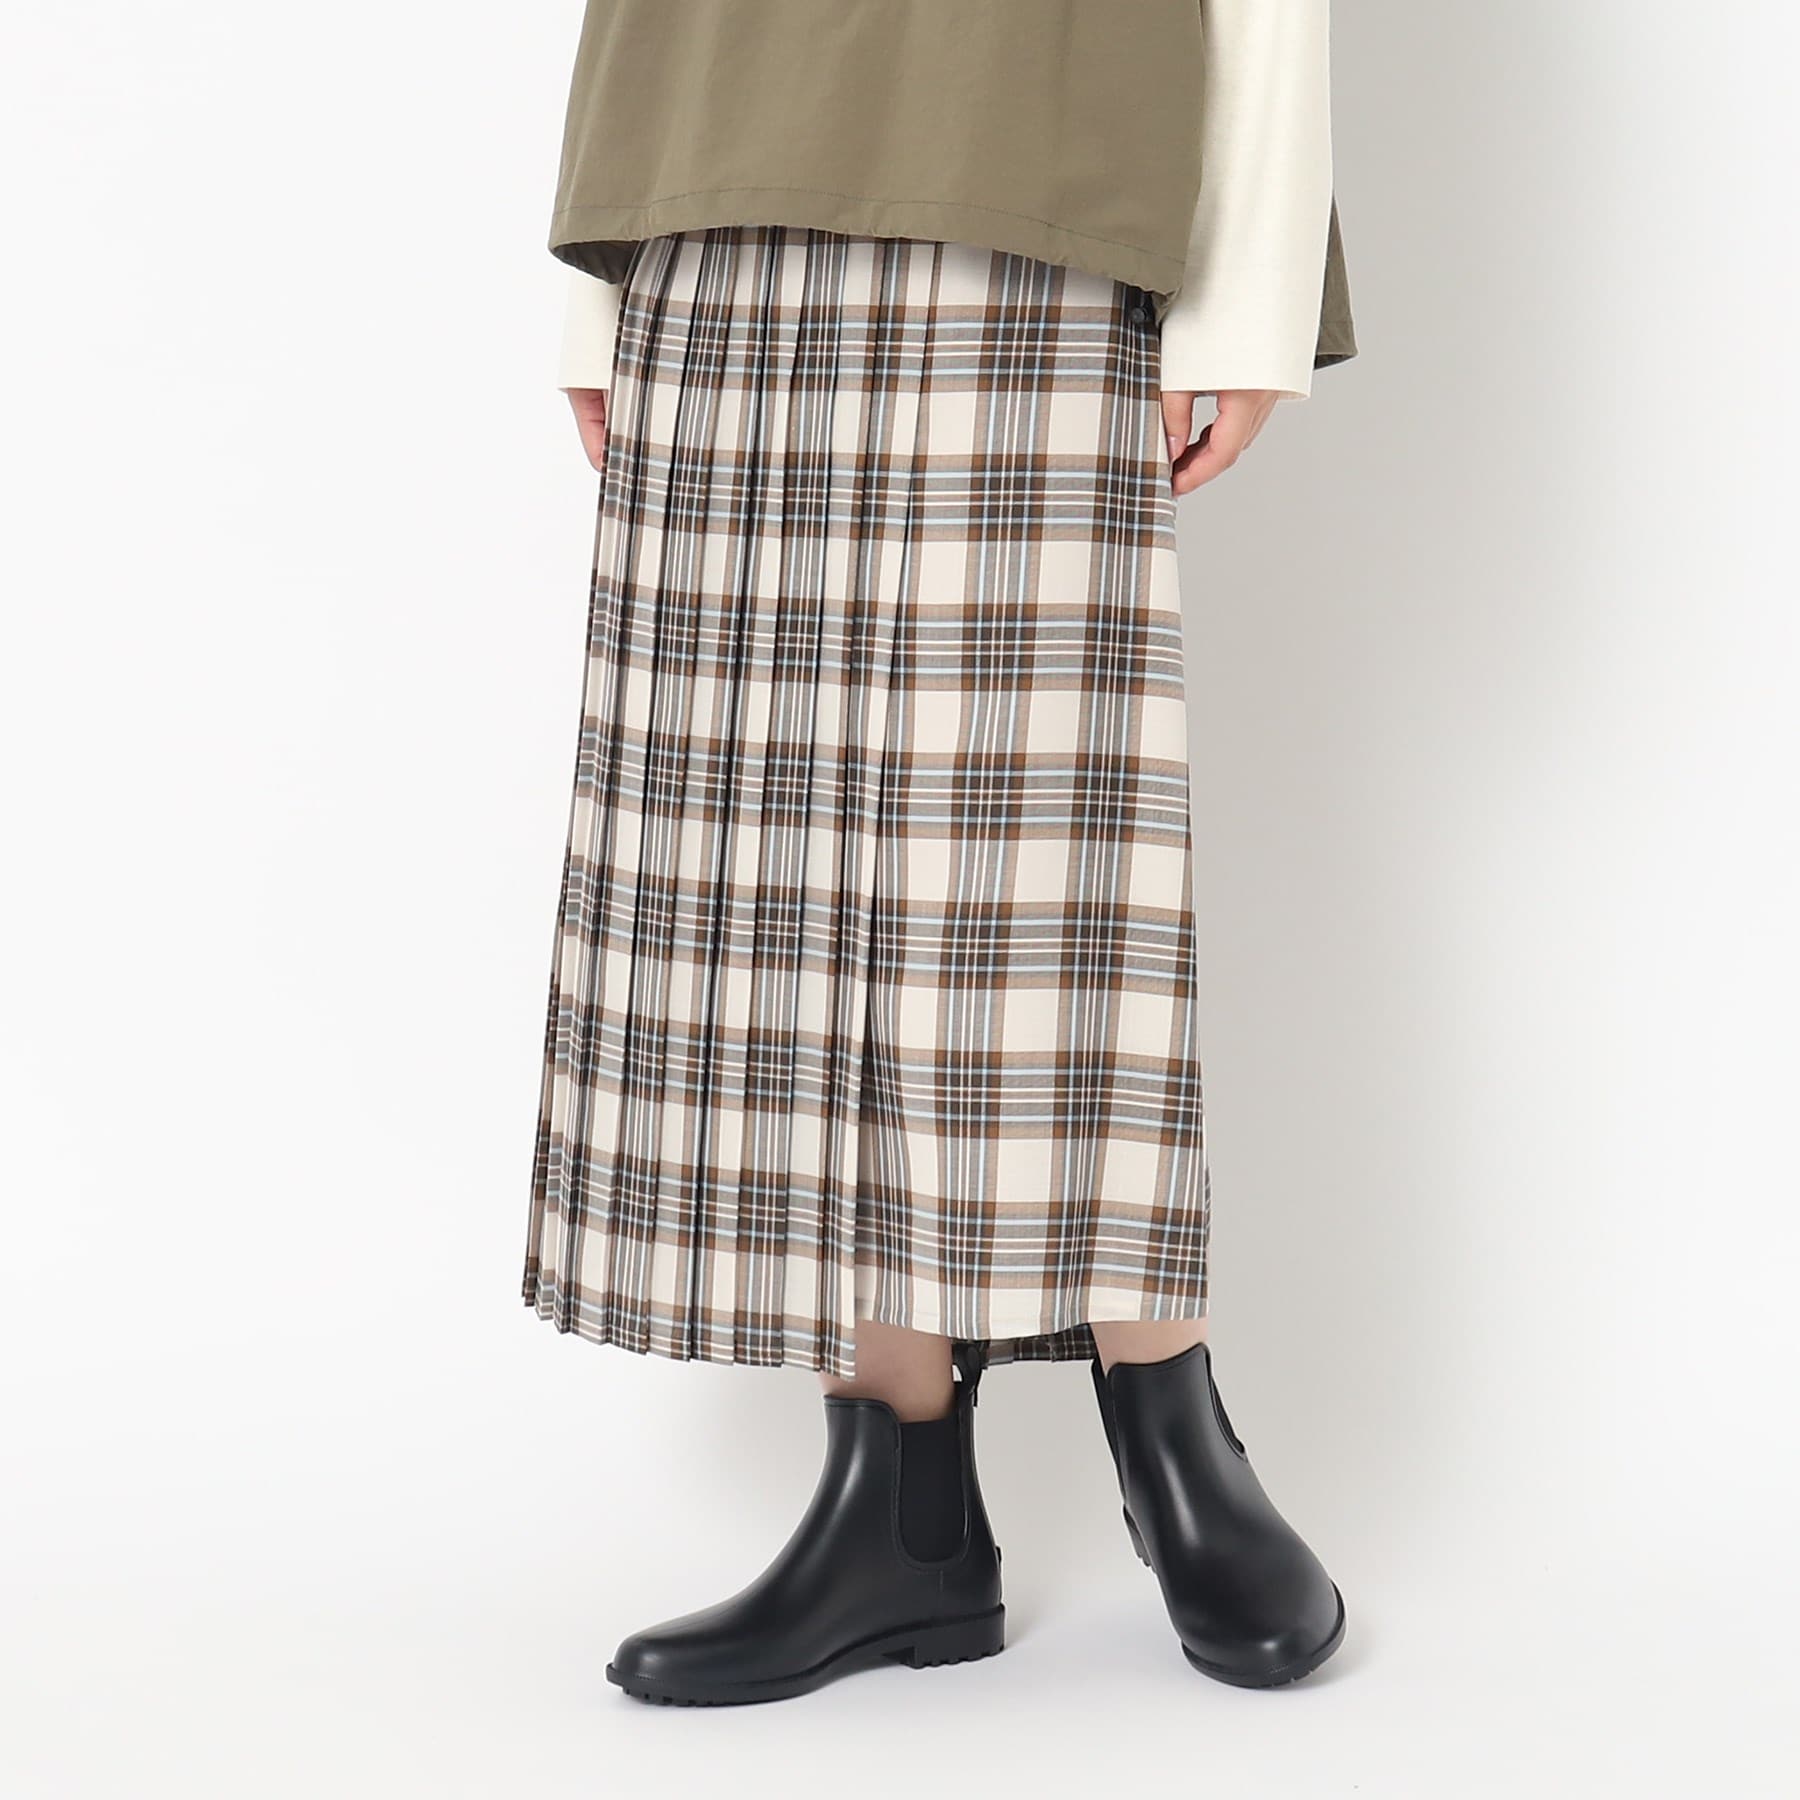 ポーシャル(poushal)の【巻きスカート風】デザインスカート オフホワイト(203)